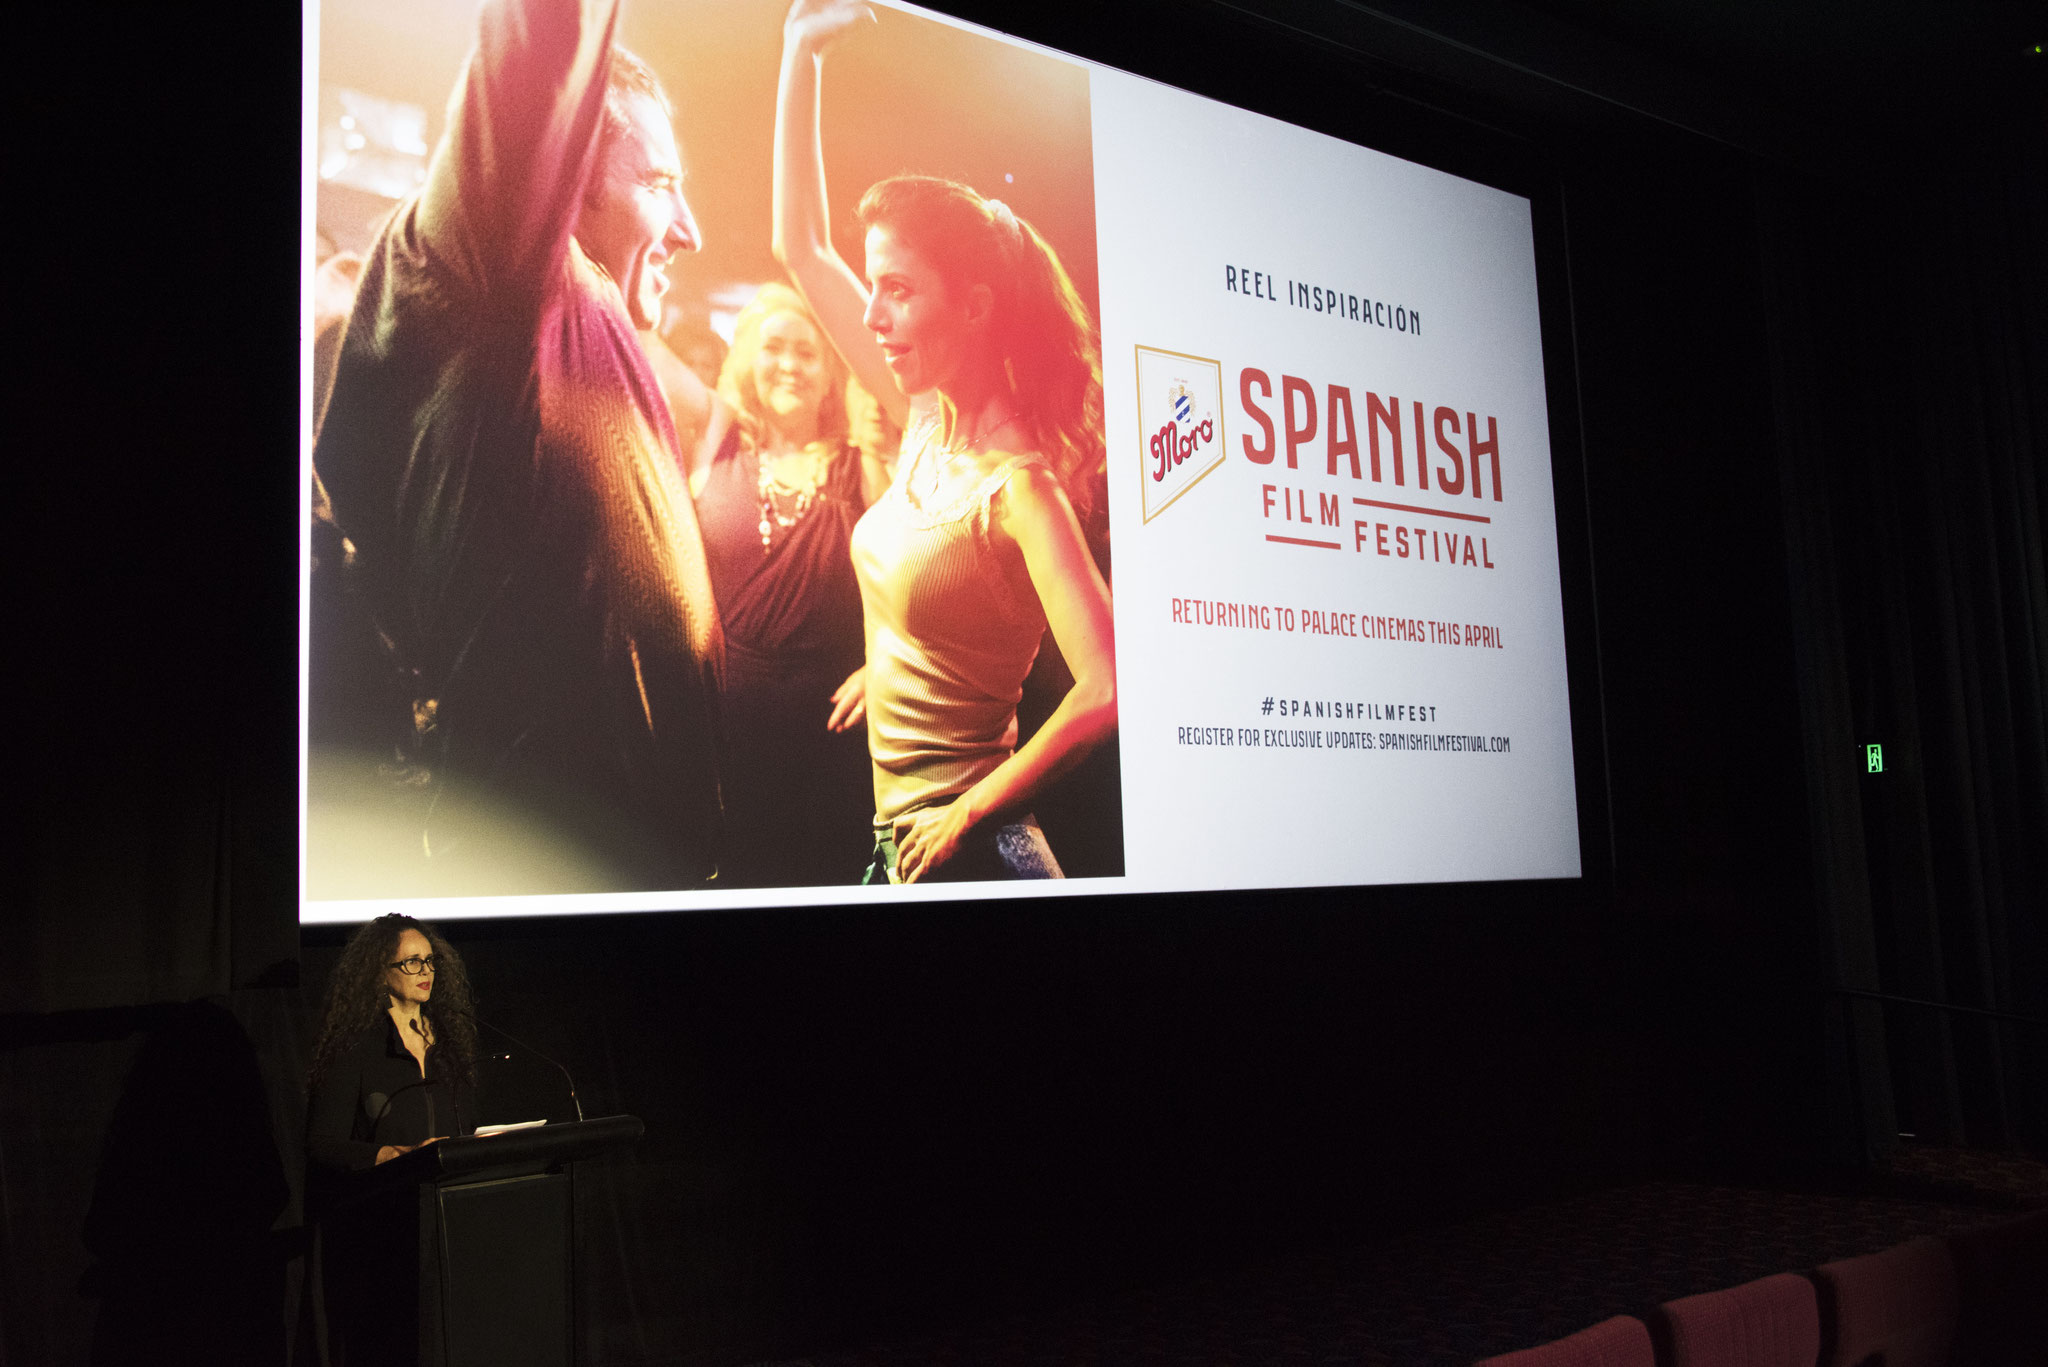 Spanish Film Festival Adelaide Opening Night